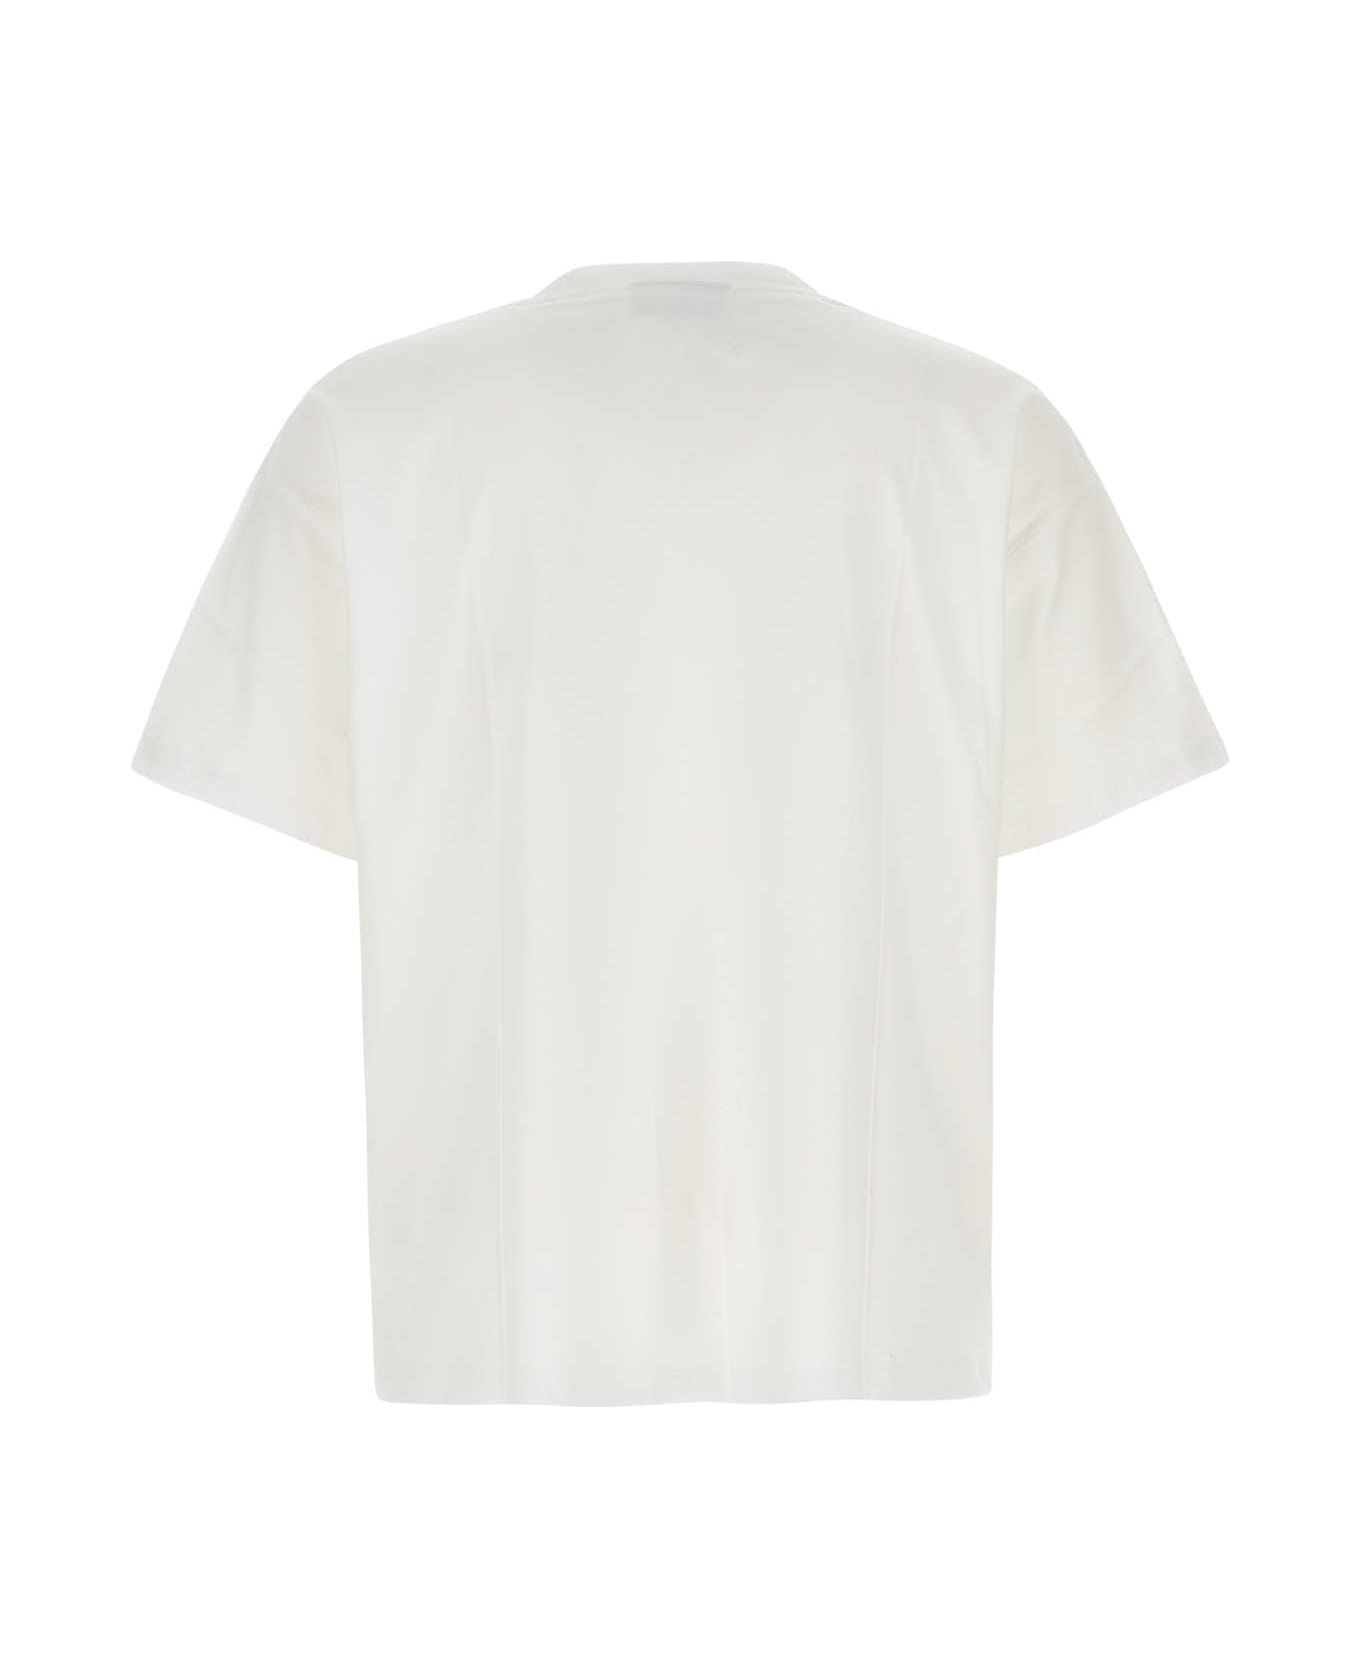 VTMNTS White Cotton Oversize T-shirt - WHITE シャツ